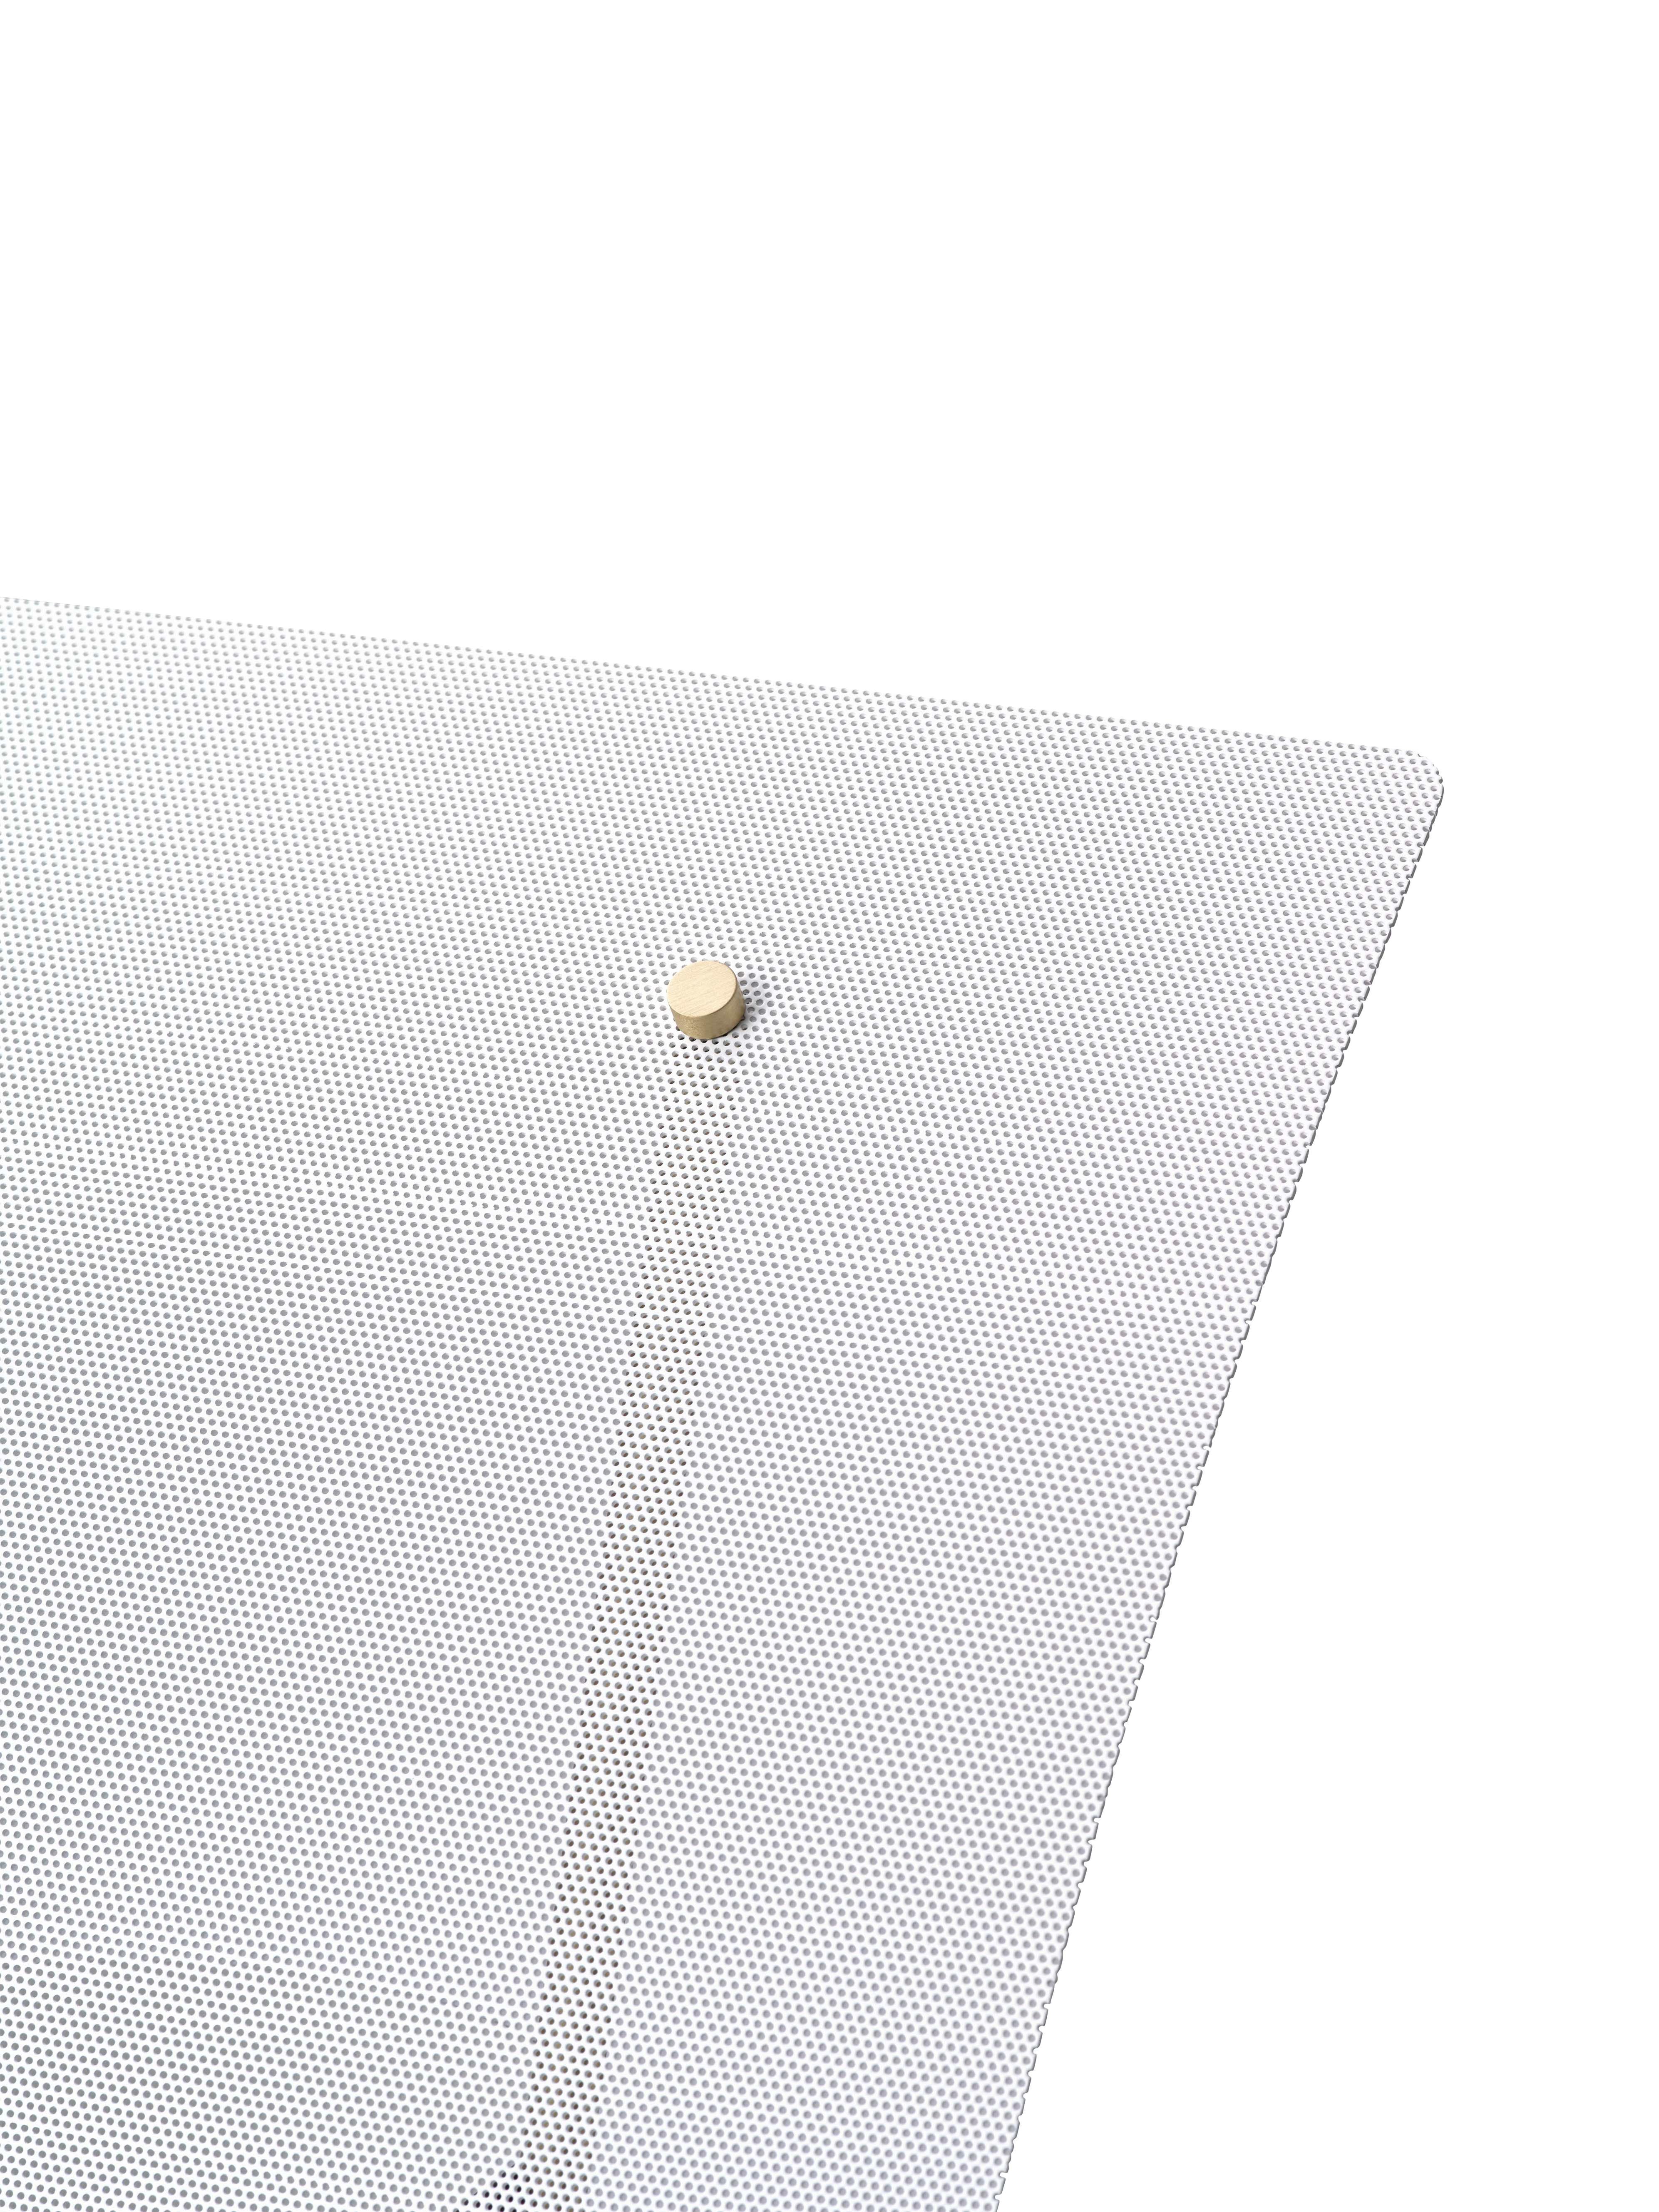 Contemporary Pierre Guariche Kite Floor Lamp in White for Sammode Studio For Sale